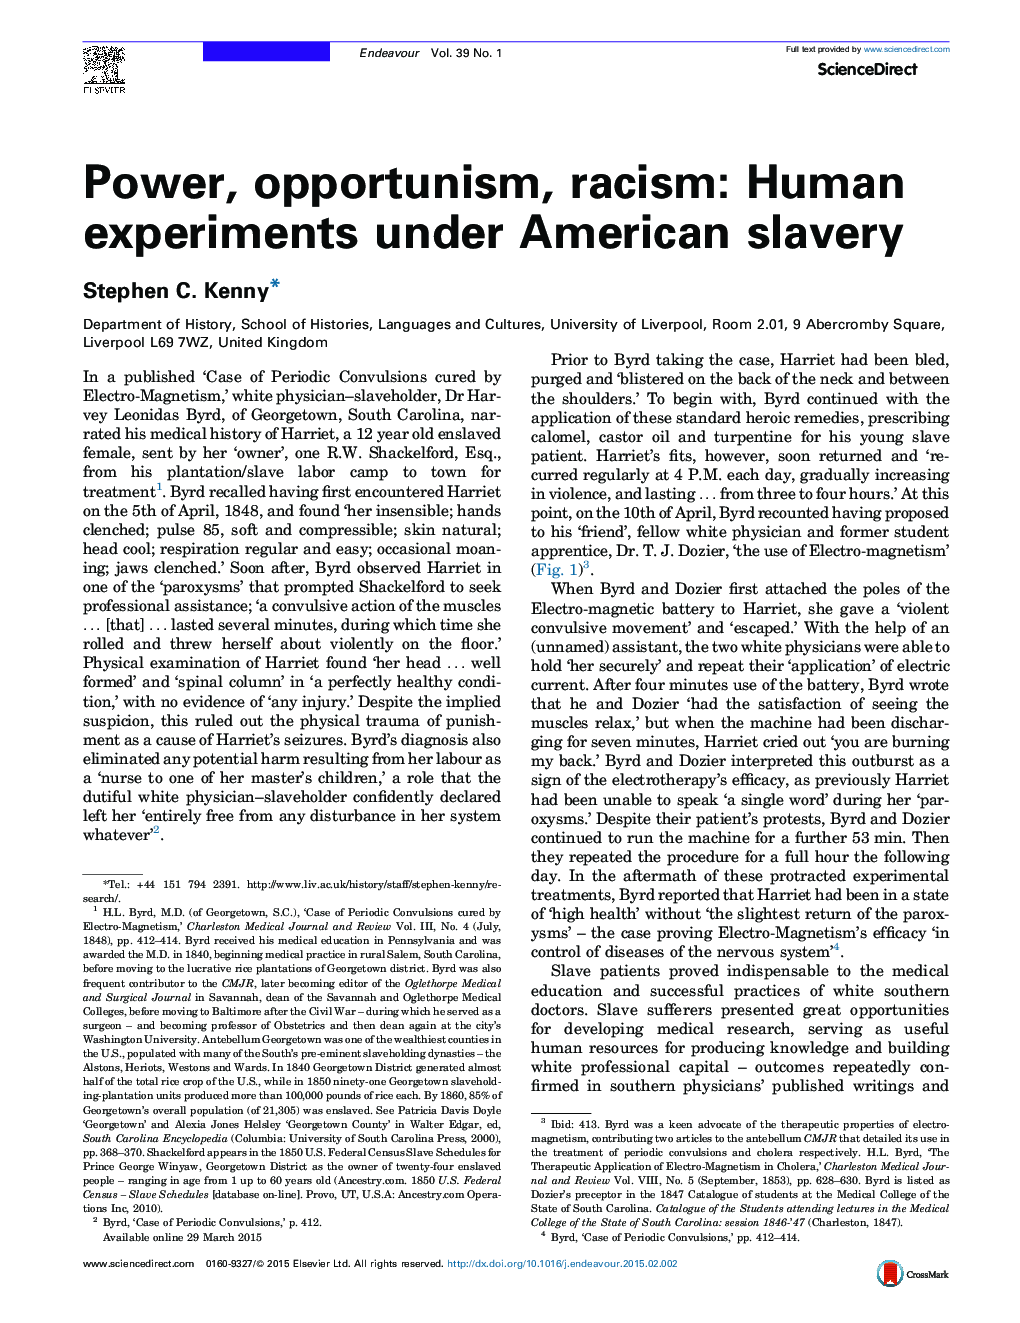 قدرت، فرصت طلبی، نژادپرستی: آزمایش های انسانی تحت بردگی آمریکا